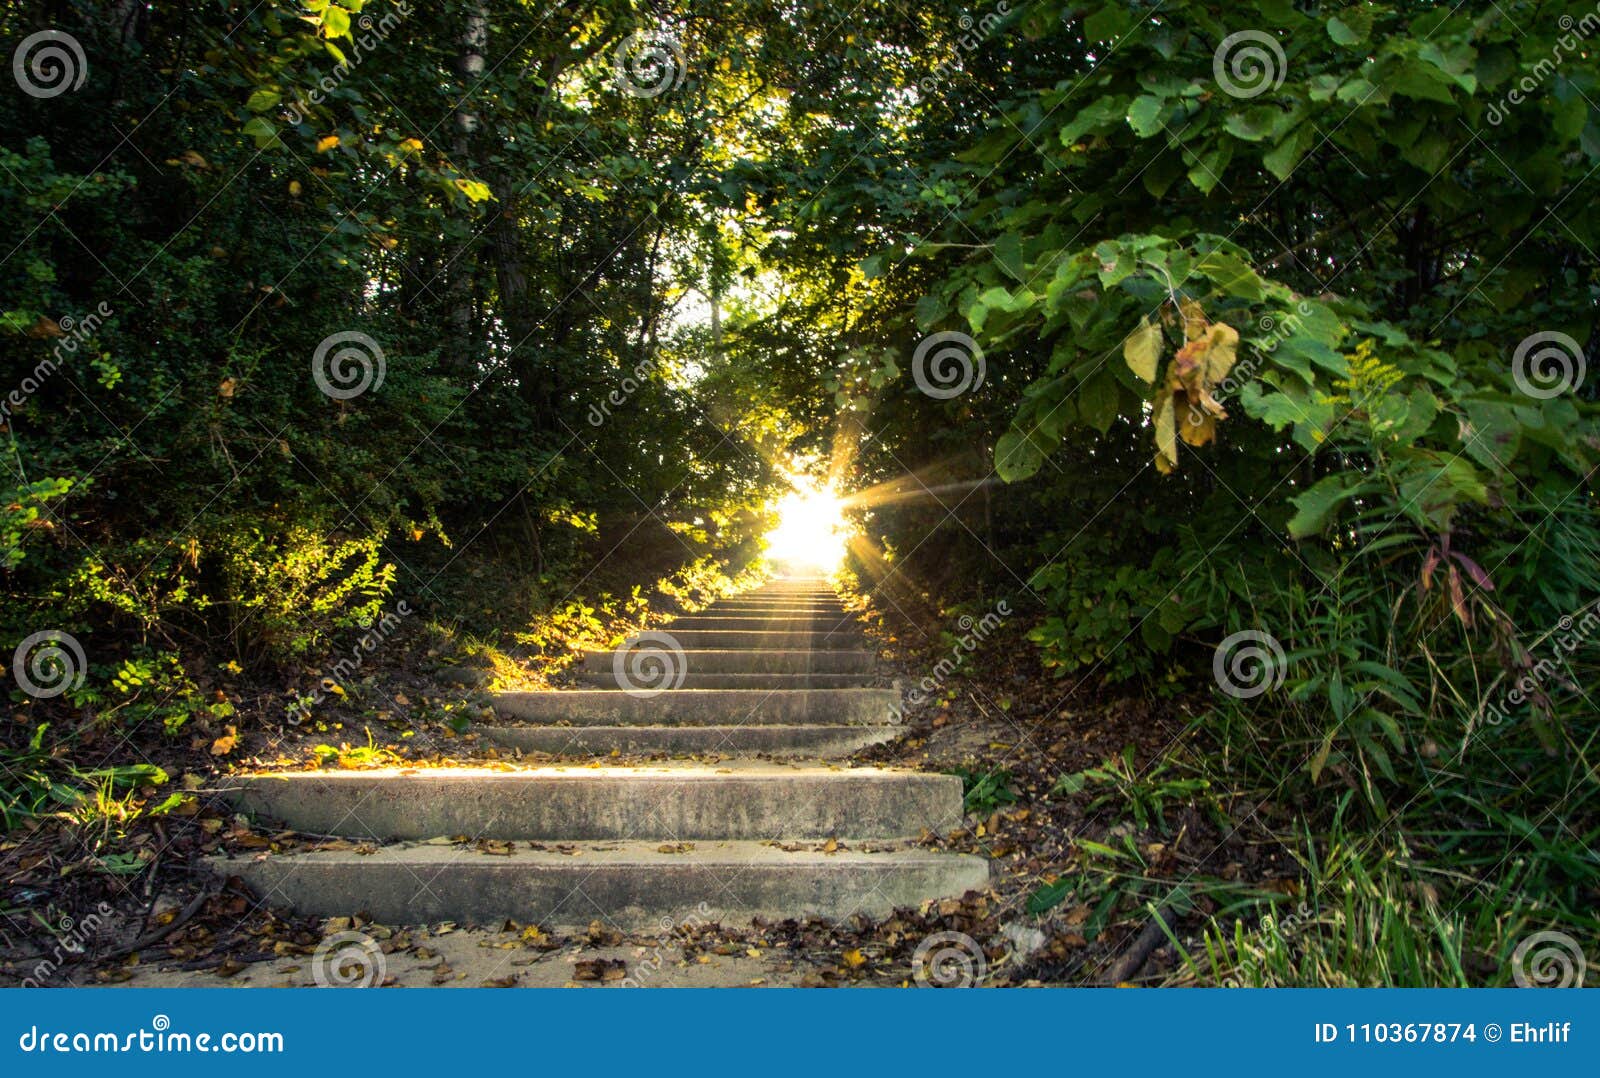 Escalera al paisaje de la naturaleza del cielo. La luz del sol fluye abajo de una escalera que viaje para arriba a través de un bosque escénico